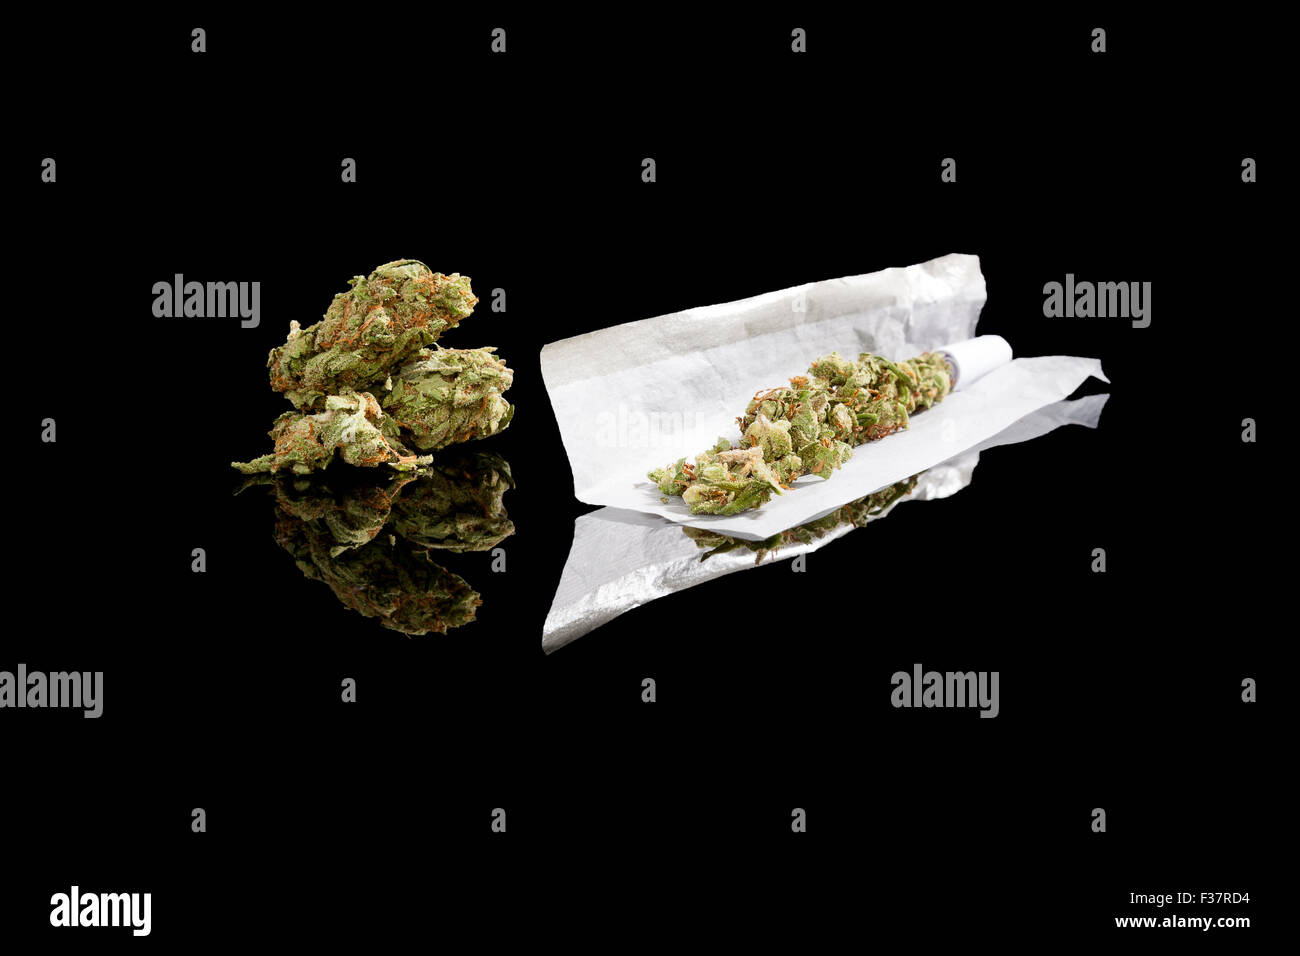 La marijuana bud e di sigarette di carta di rotolamento isolati su sfondo nero. Fumare cannabis, tossicodipendenza o uso medico. Foto Stock